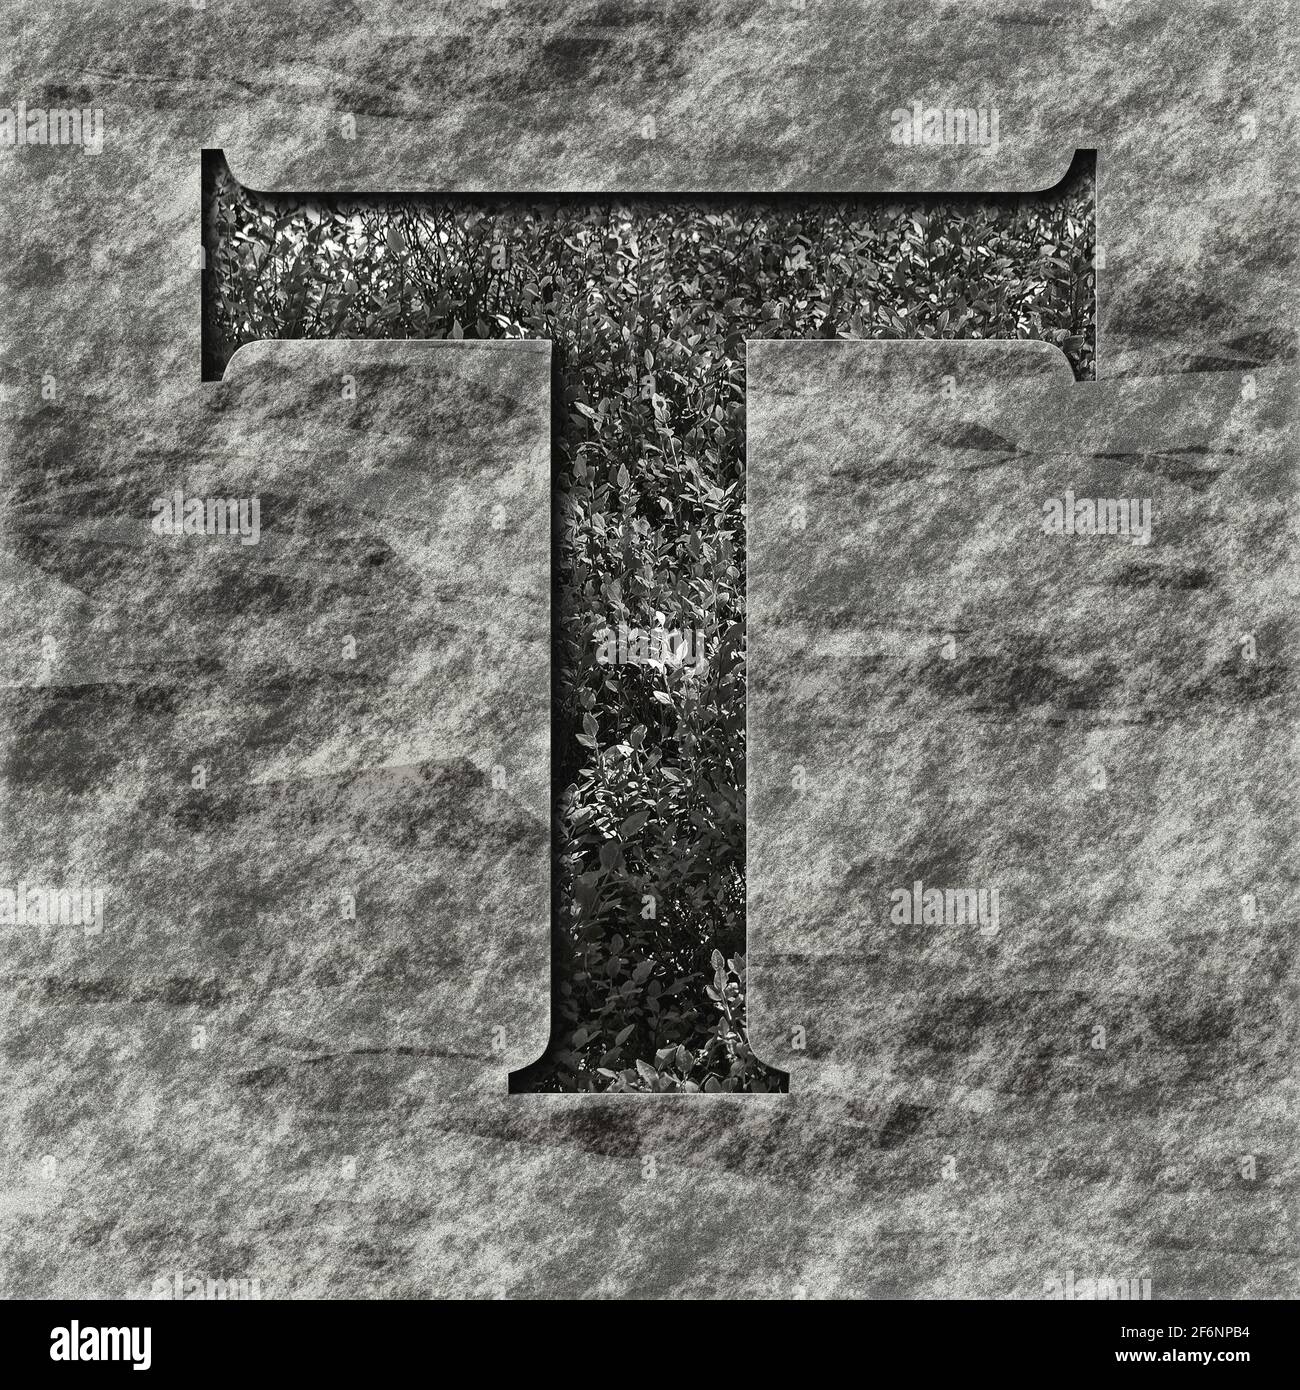 Grafica quadrata: Lettera maiuscola con il carattere maiuscolo T, un rilievo profondo su pietra piena di piante Foto Stock